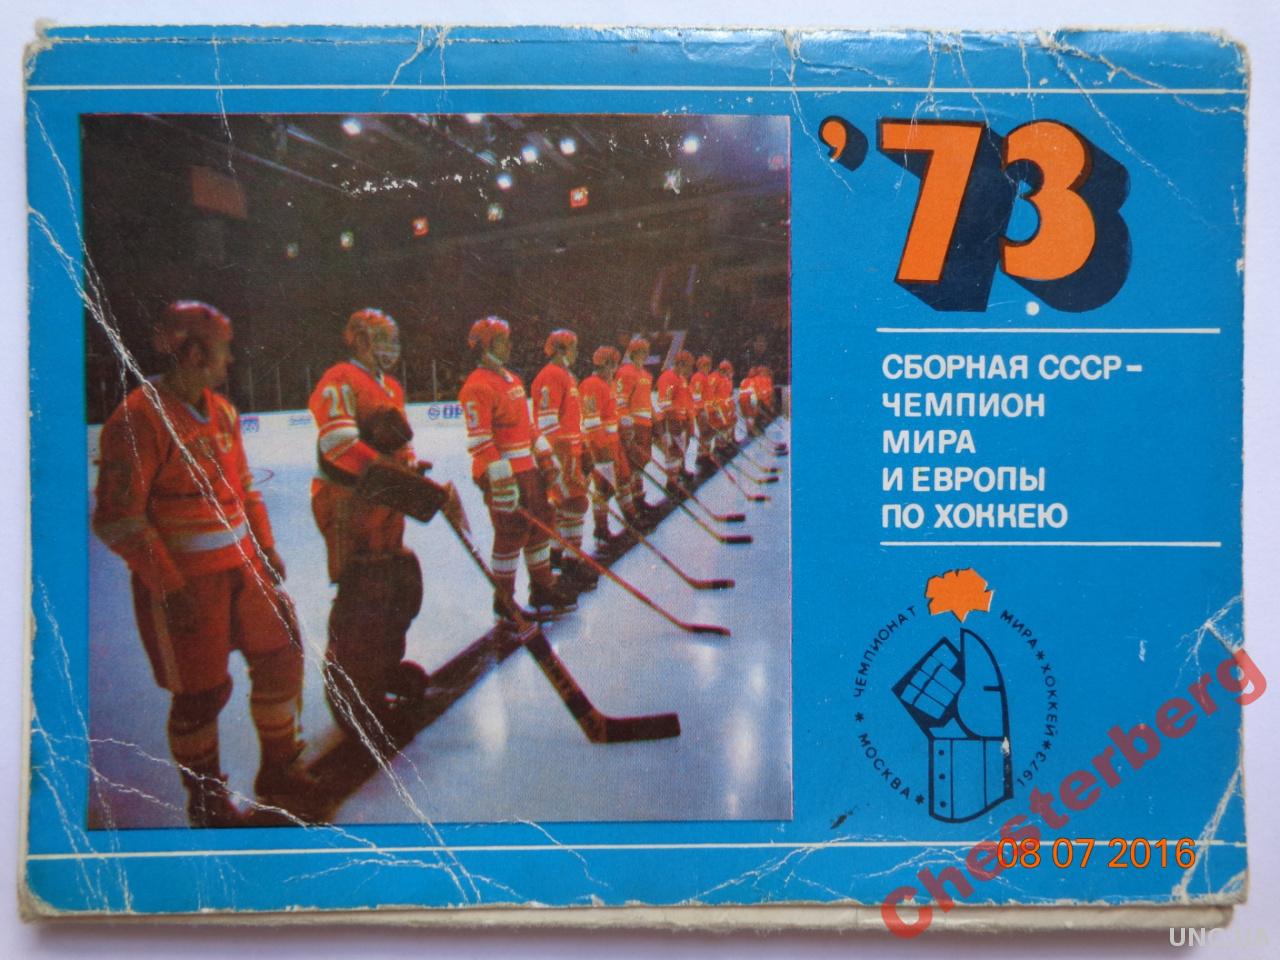 Сборная СССР по хоккею 1973 - Комплект открыток